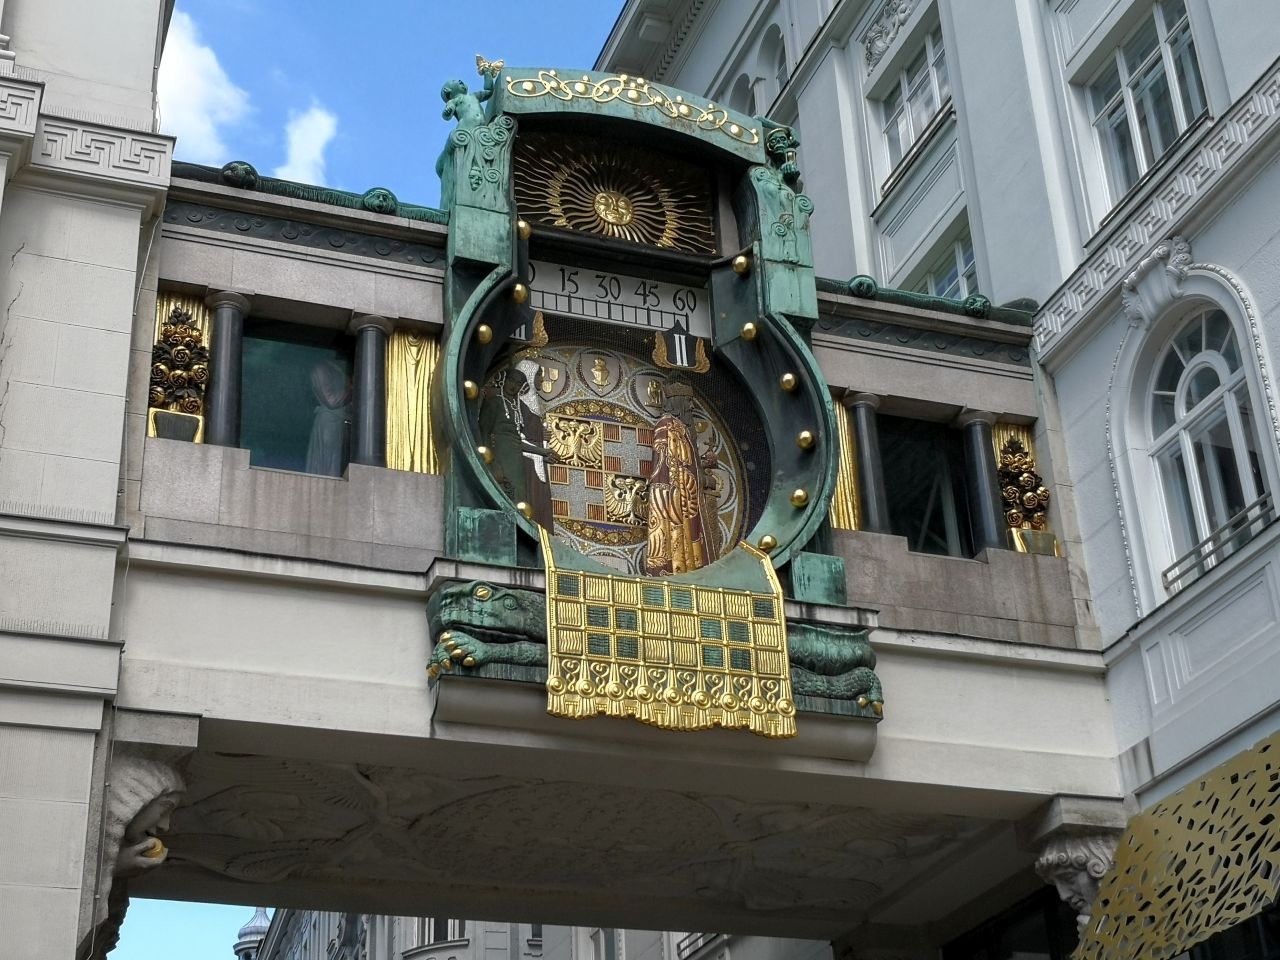 Anker Clock Ankeruhr - 'hidden' gem of Vienna